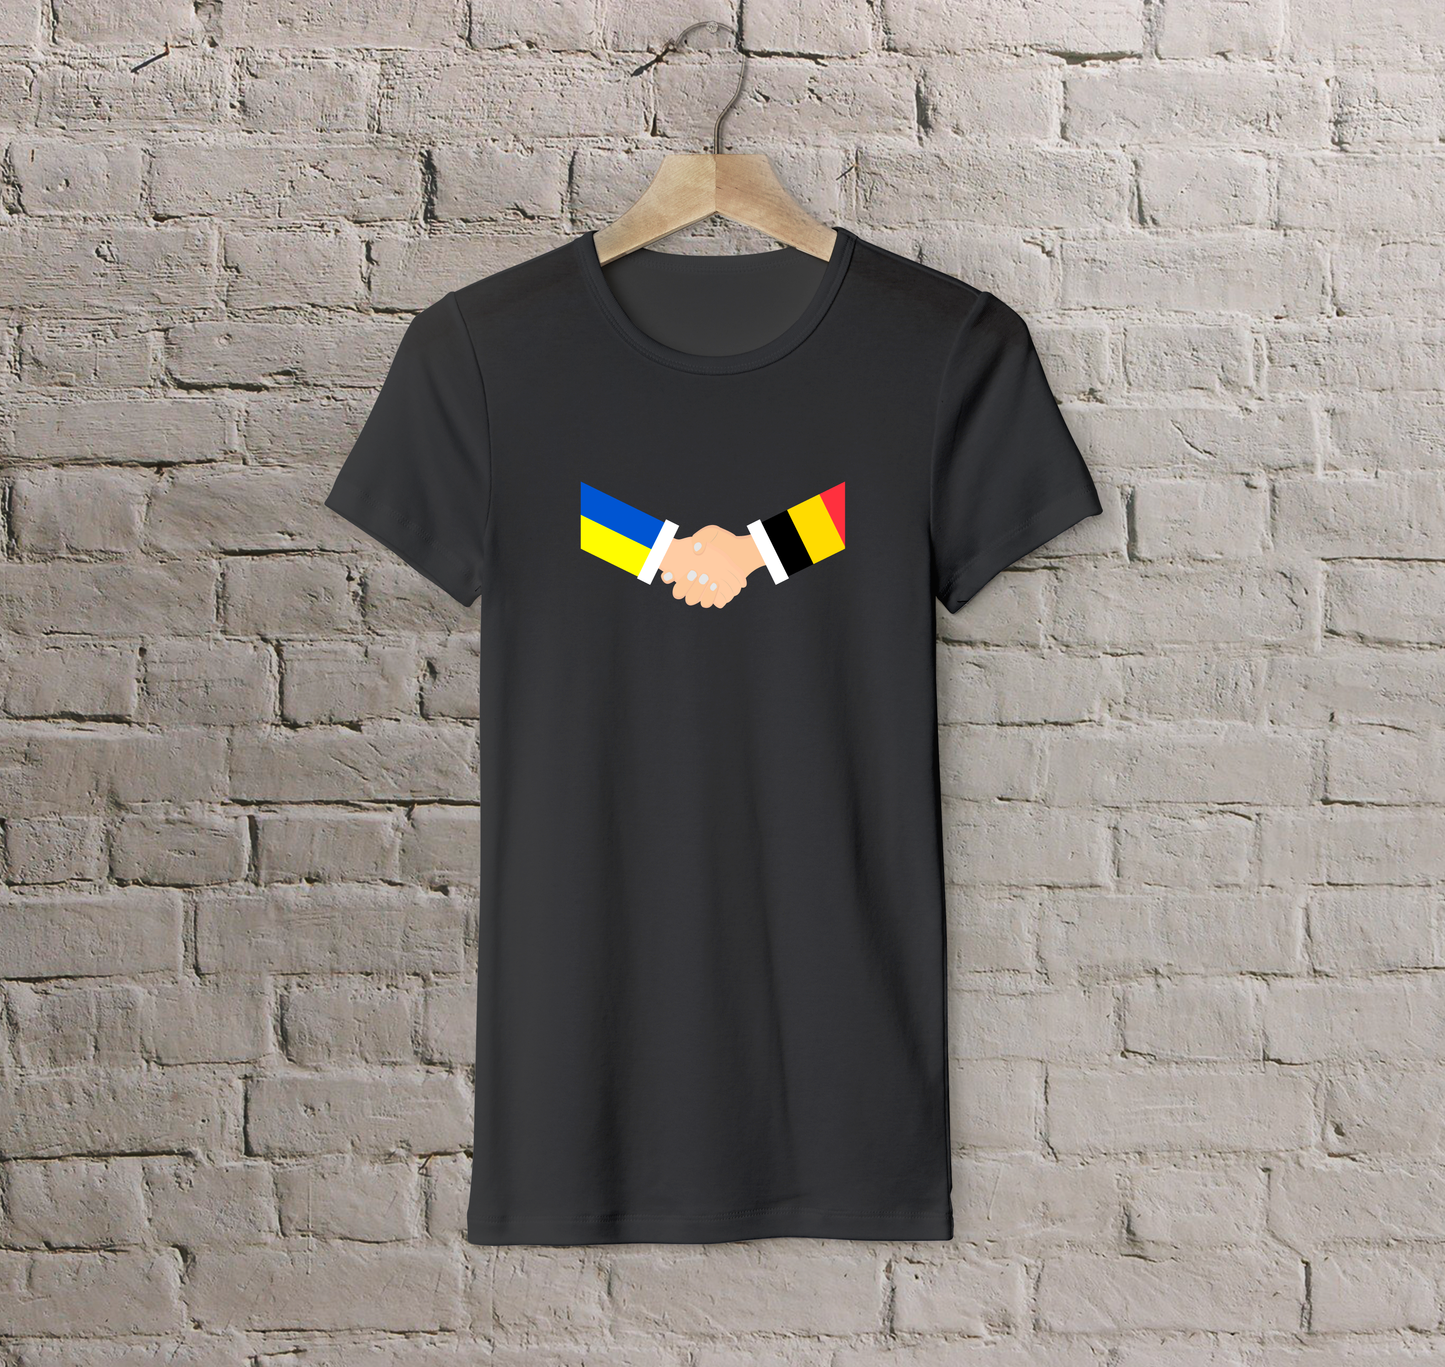 T-shirt Belgium + Ukraine (handshake)